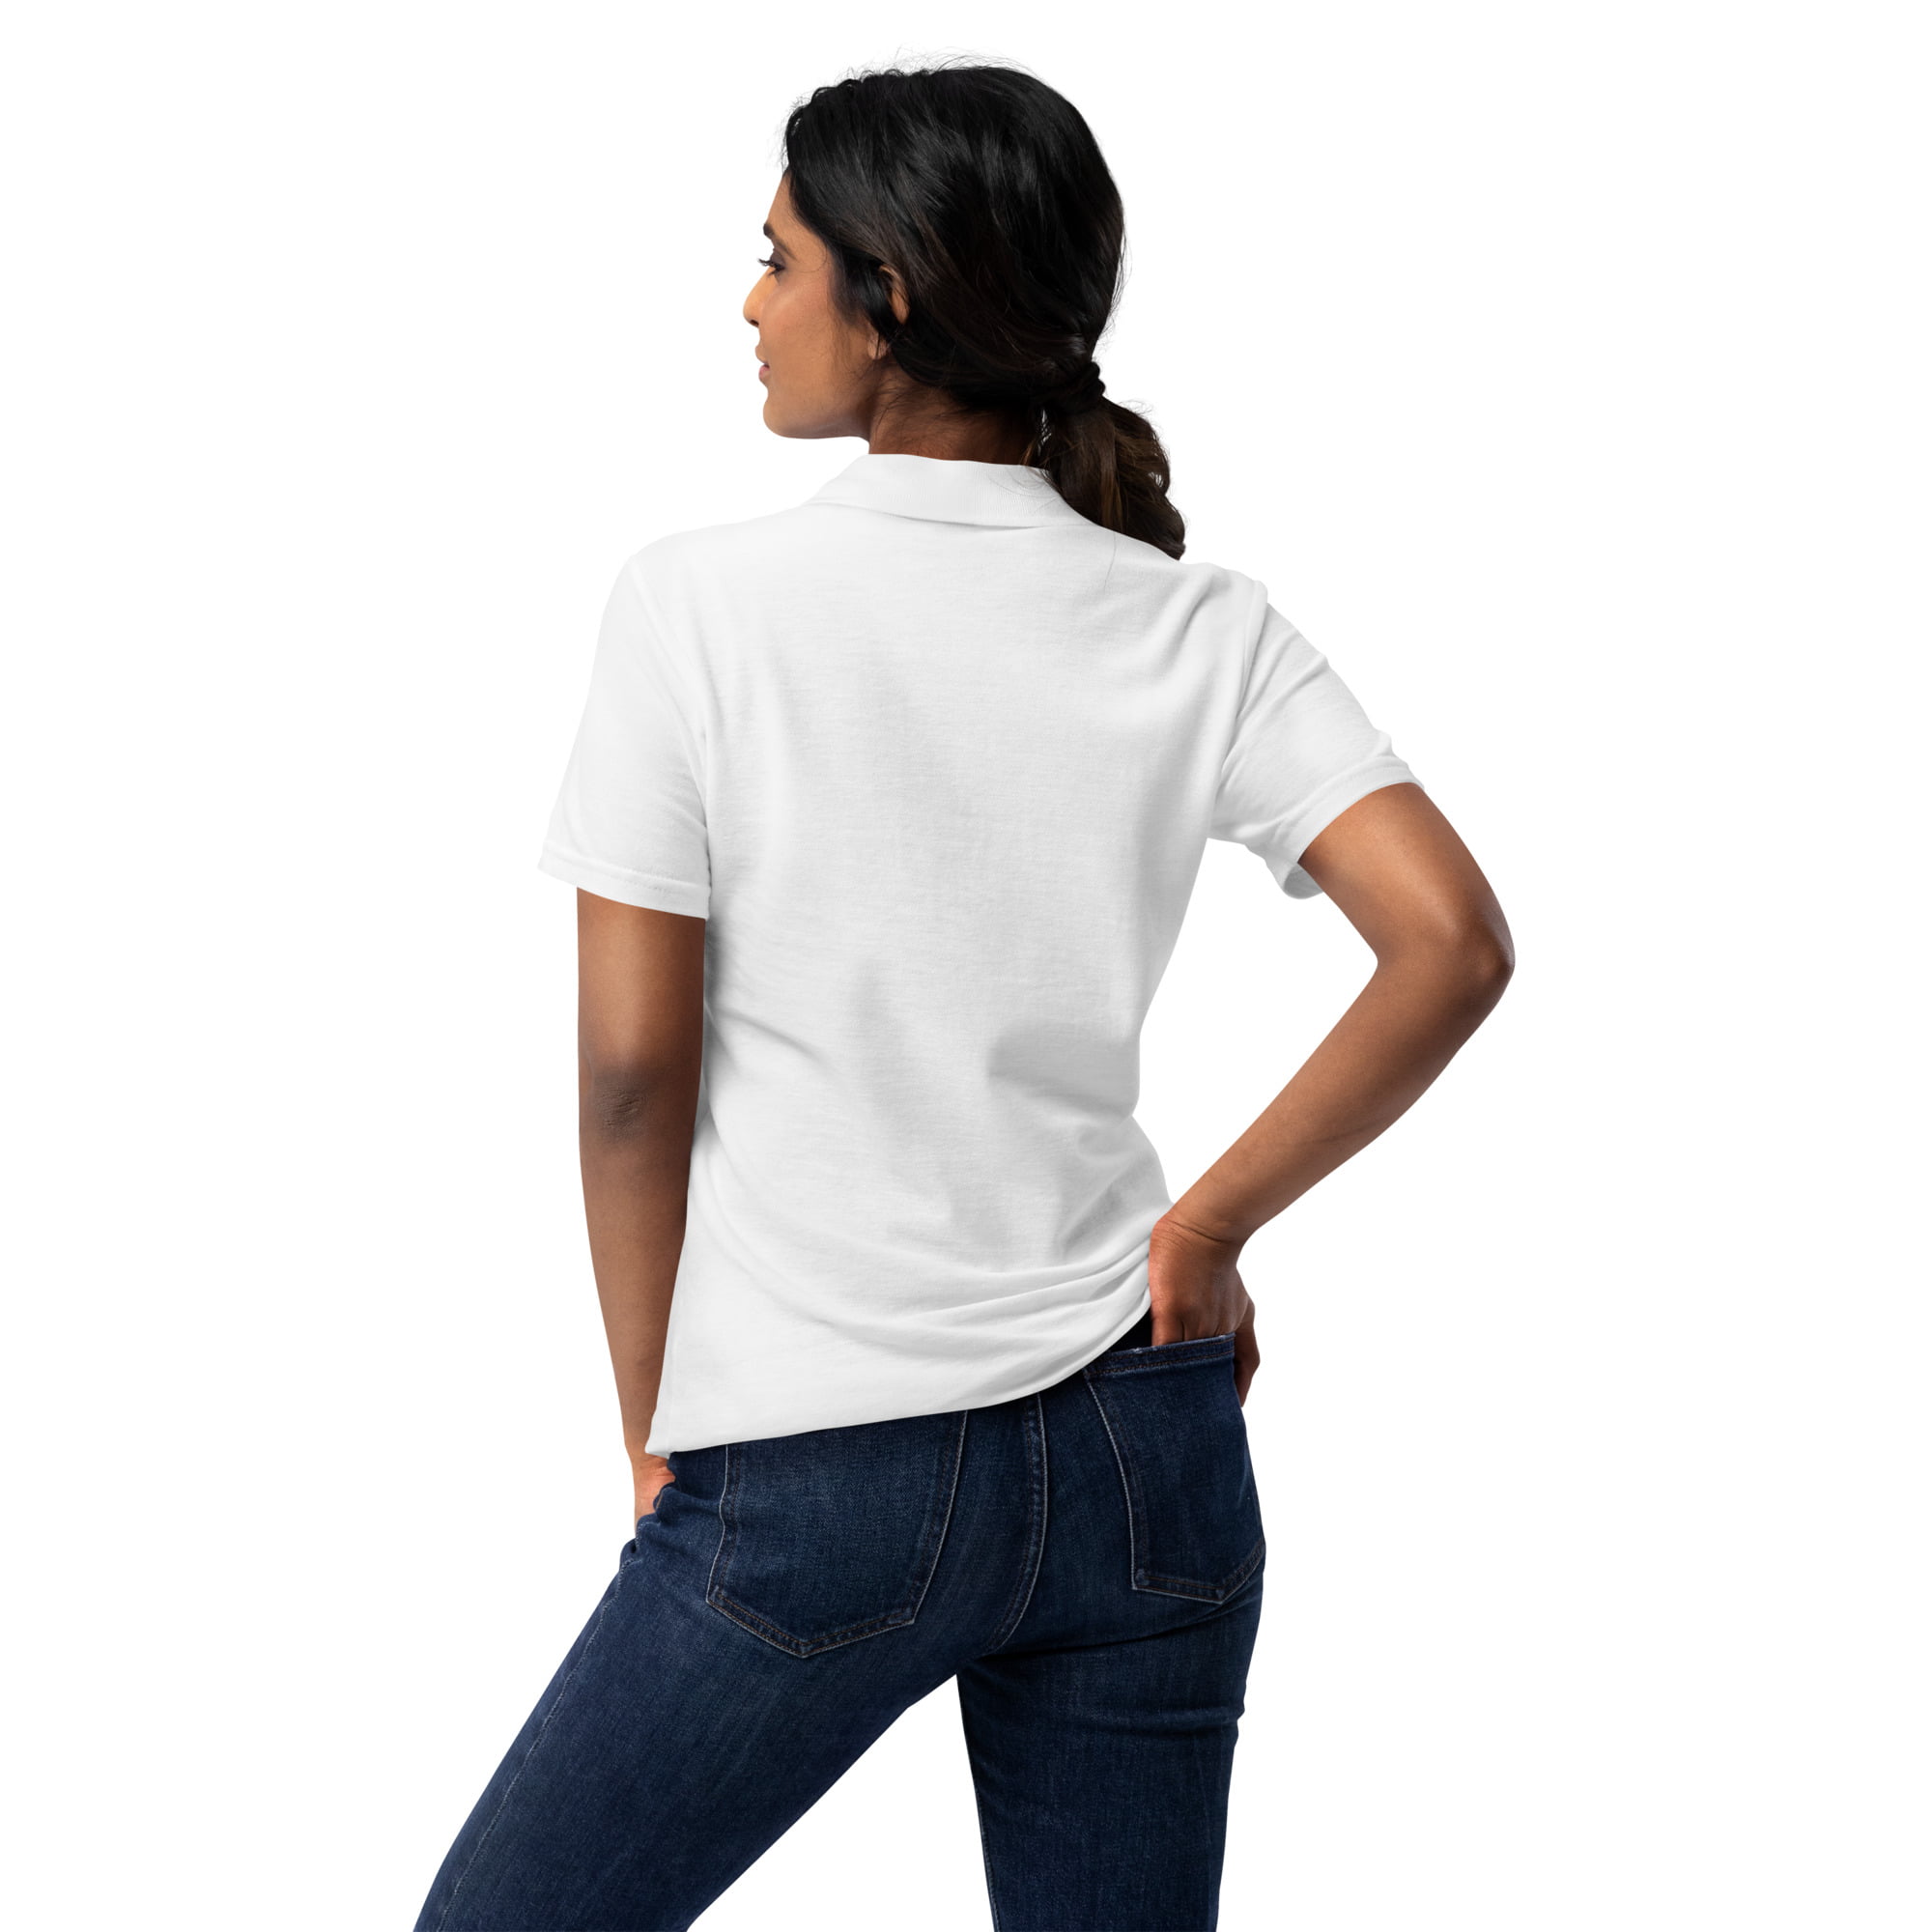 womens-pique-polo-shirt-white-back-2-6486491ed15a8.jpg